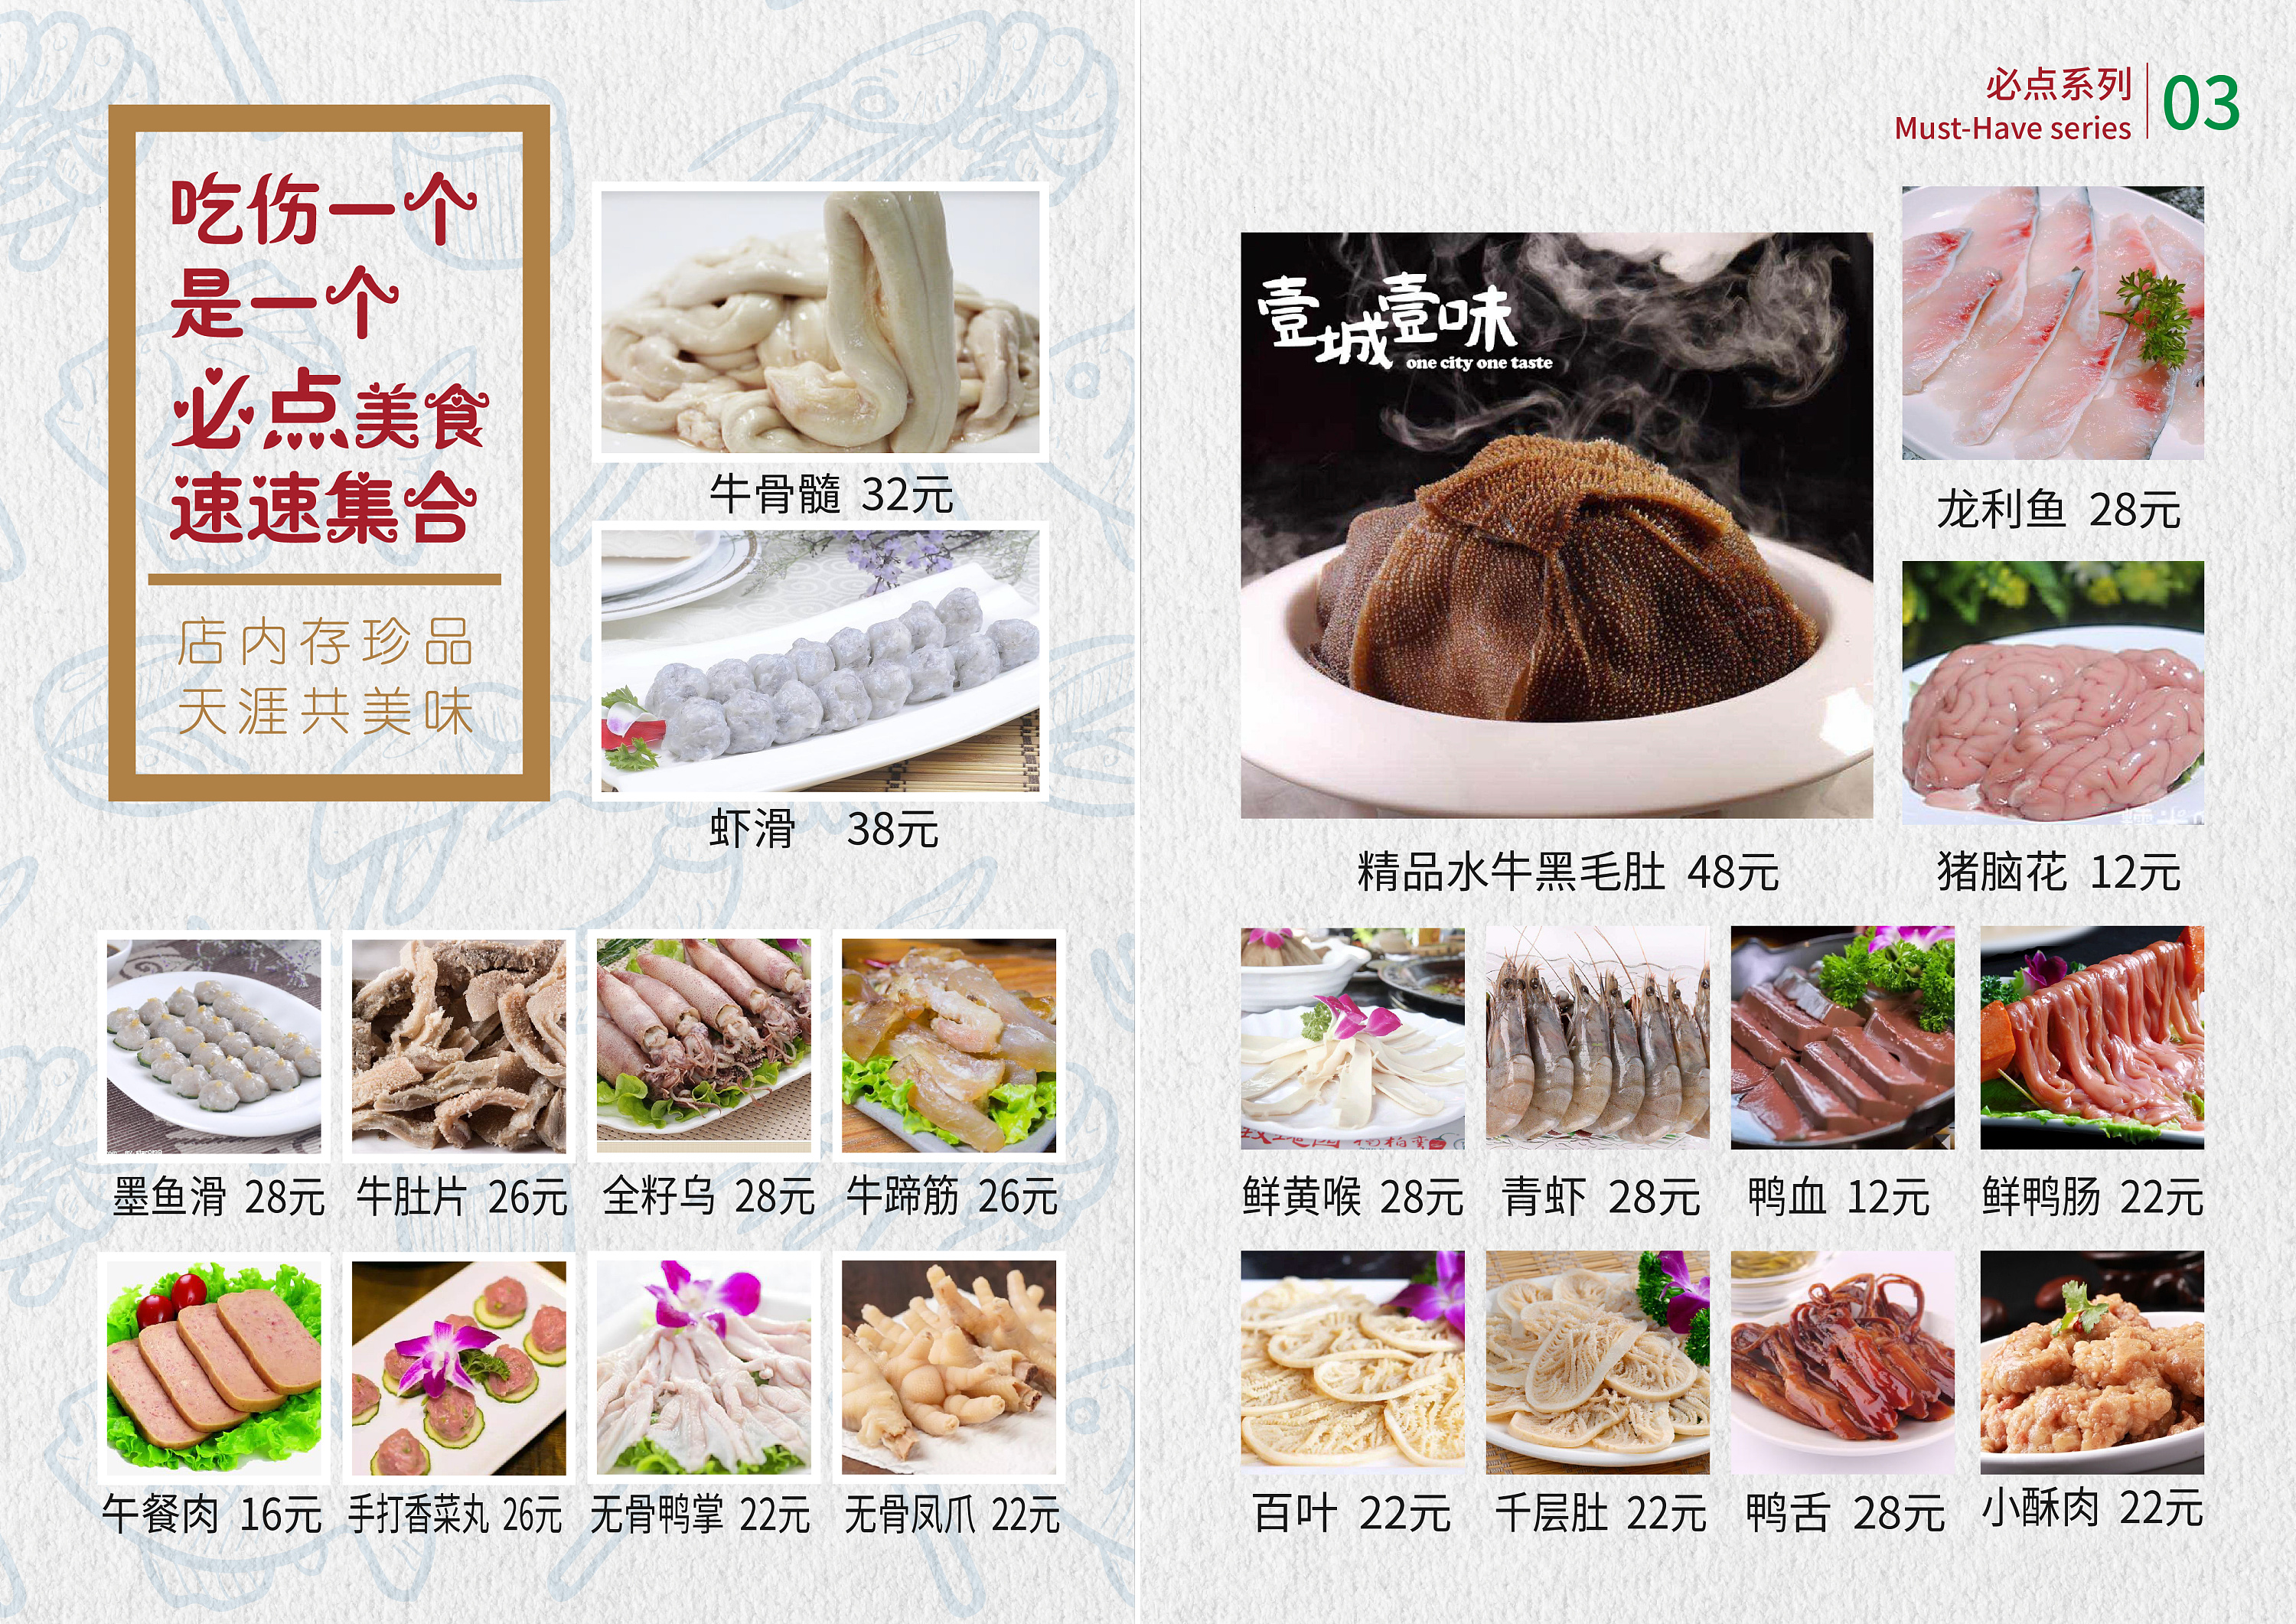 火锅食材大全菜单肉类图片